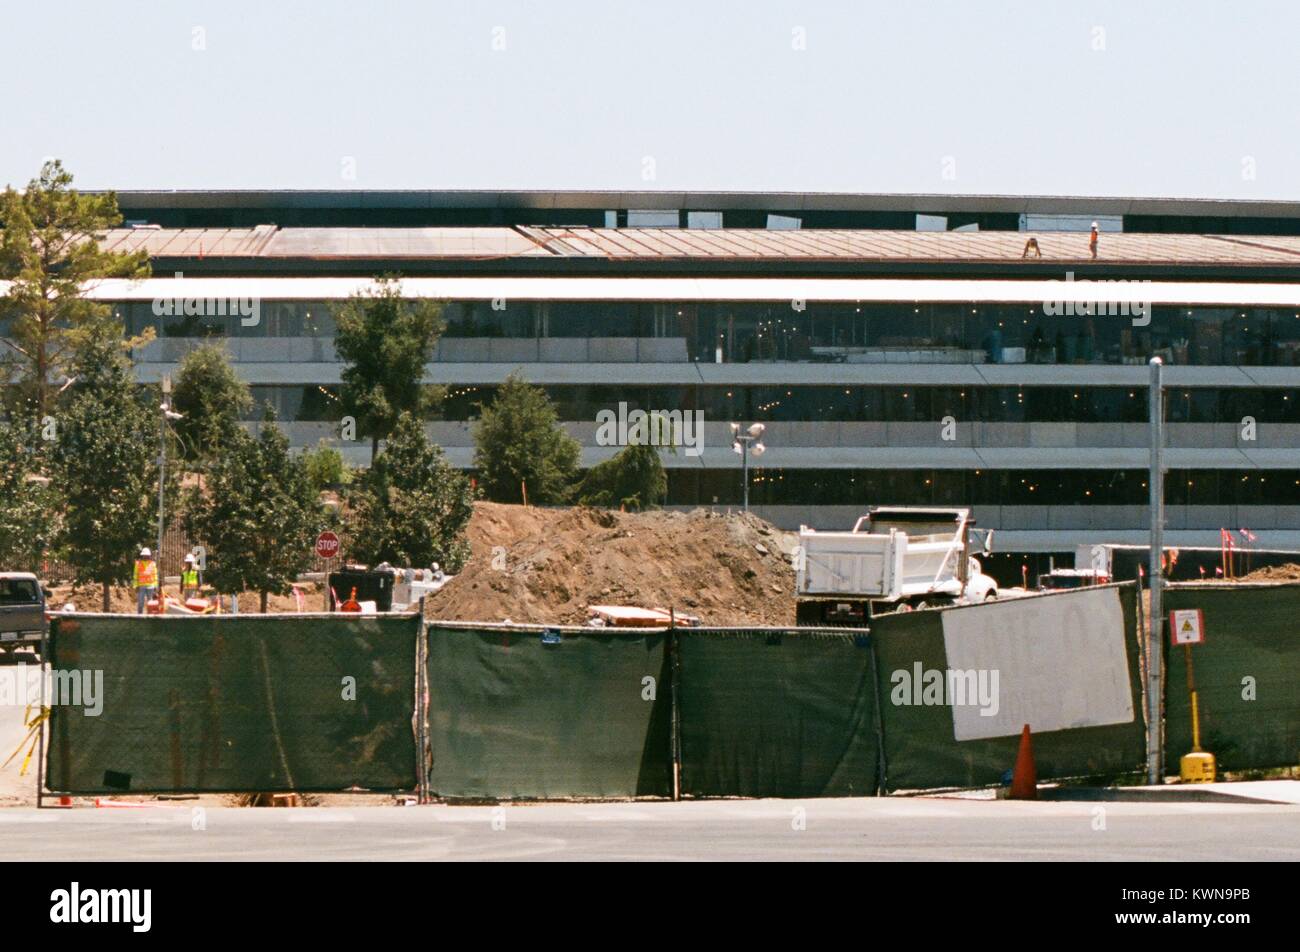 Un site de construction est visible en face du bâtiment principal de l'Apple Park, connu familièrement comme "le vaisseau spatial", le nouveau quartier général d'Apple Inc dans la Silicon Valley ville de Cupertino, Californie, 25 juillet 2017. Banque D'Images